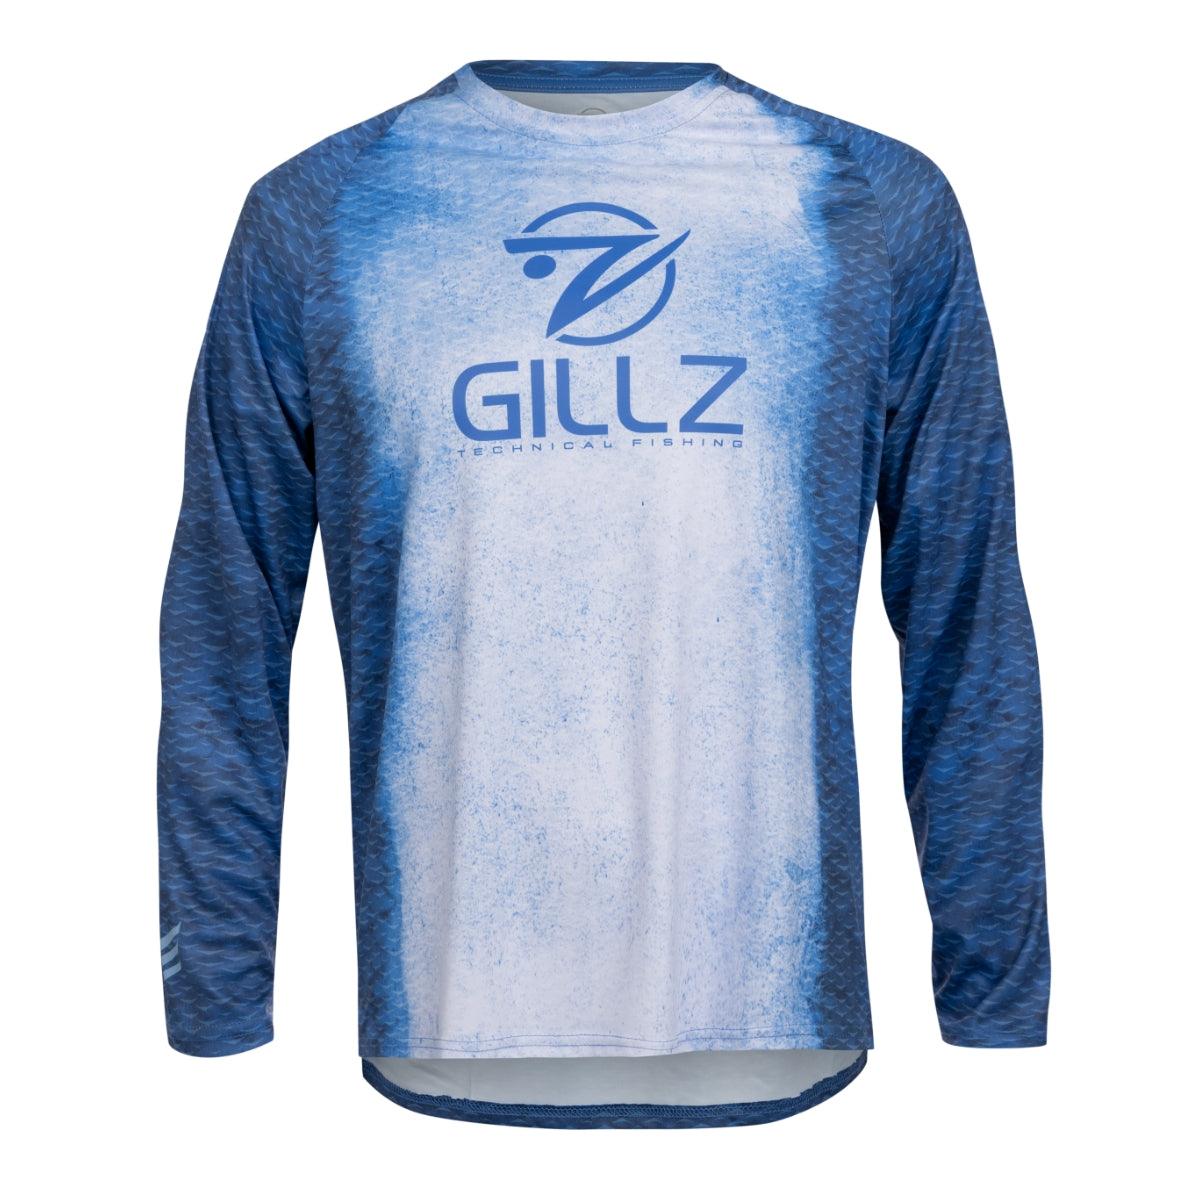 Men's Contender Long Sleeve UV "FS" - Gillz